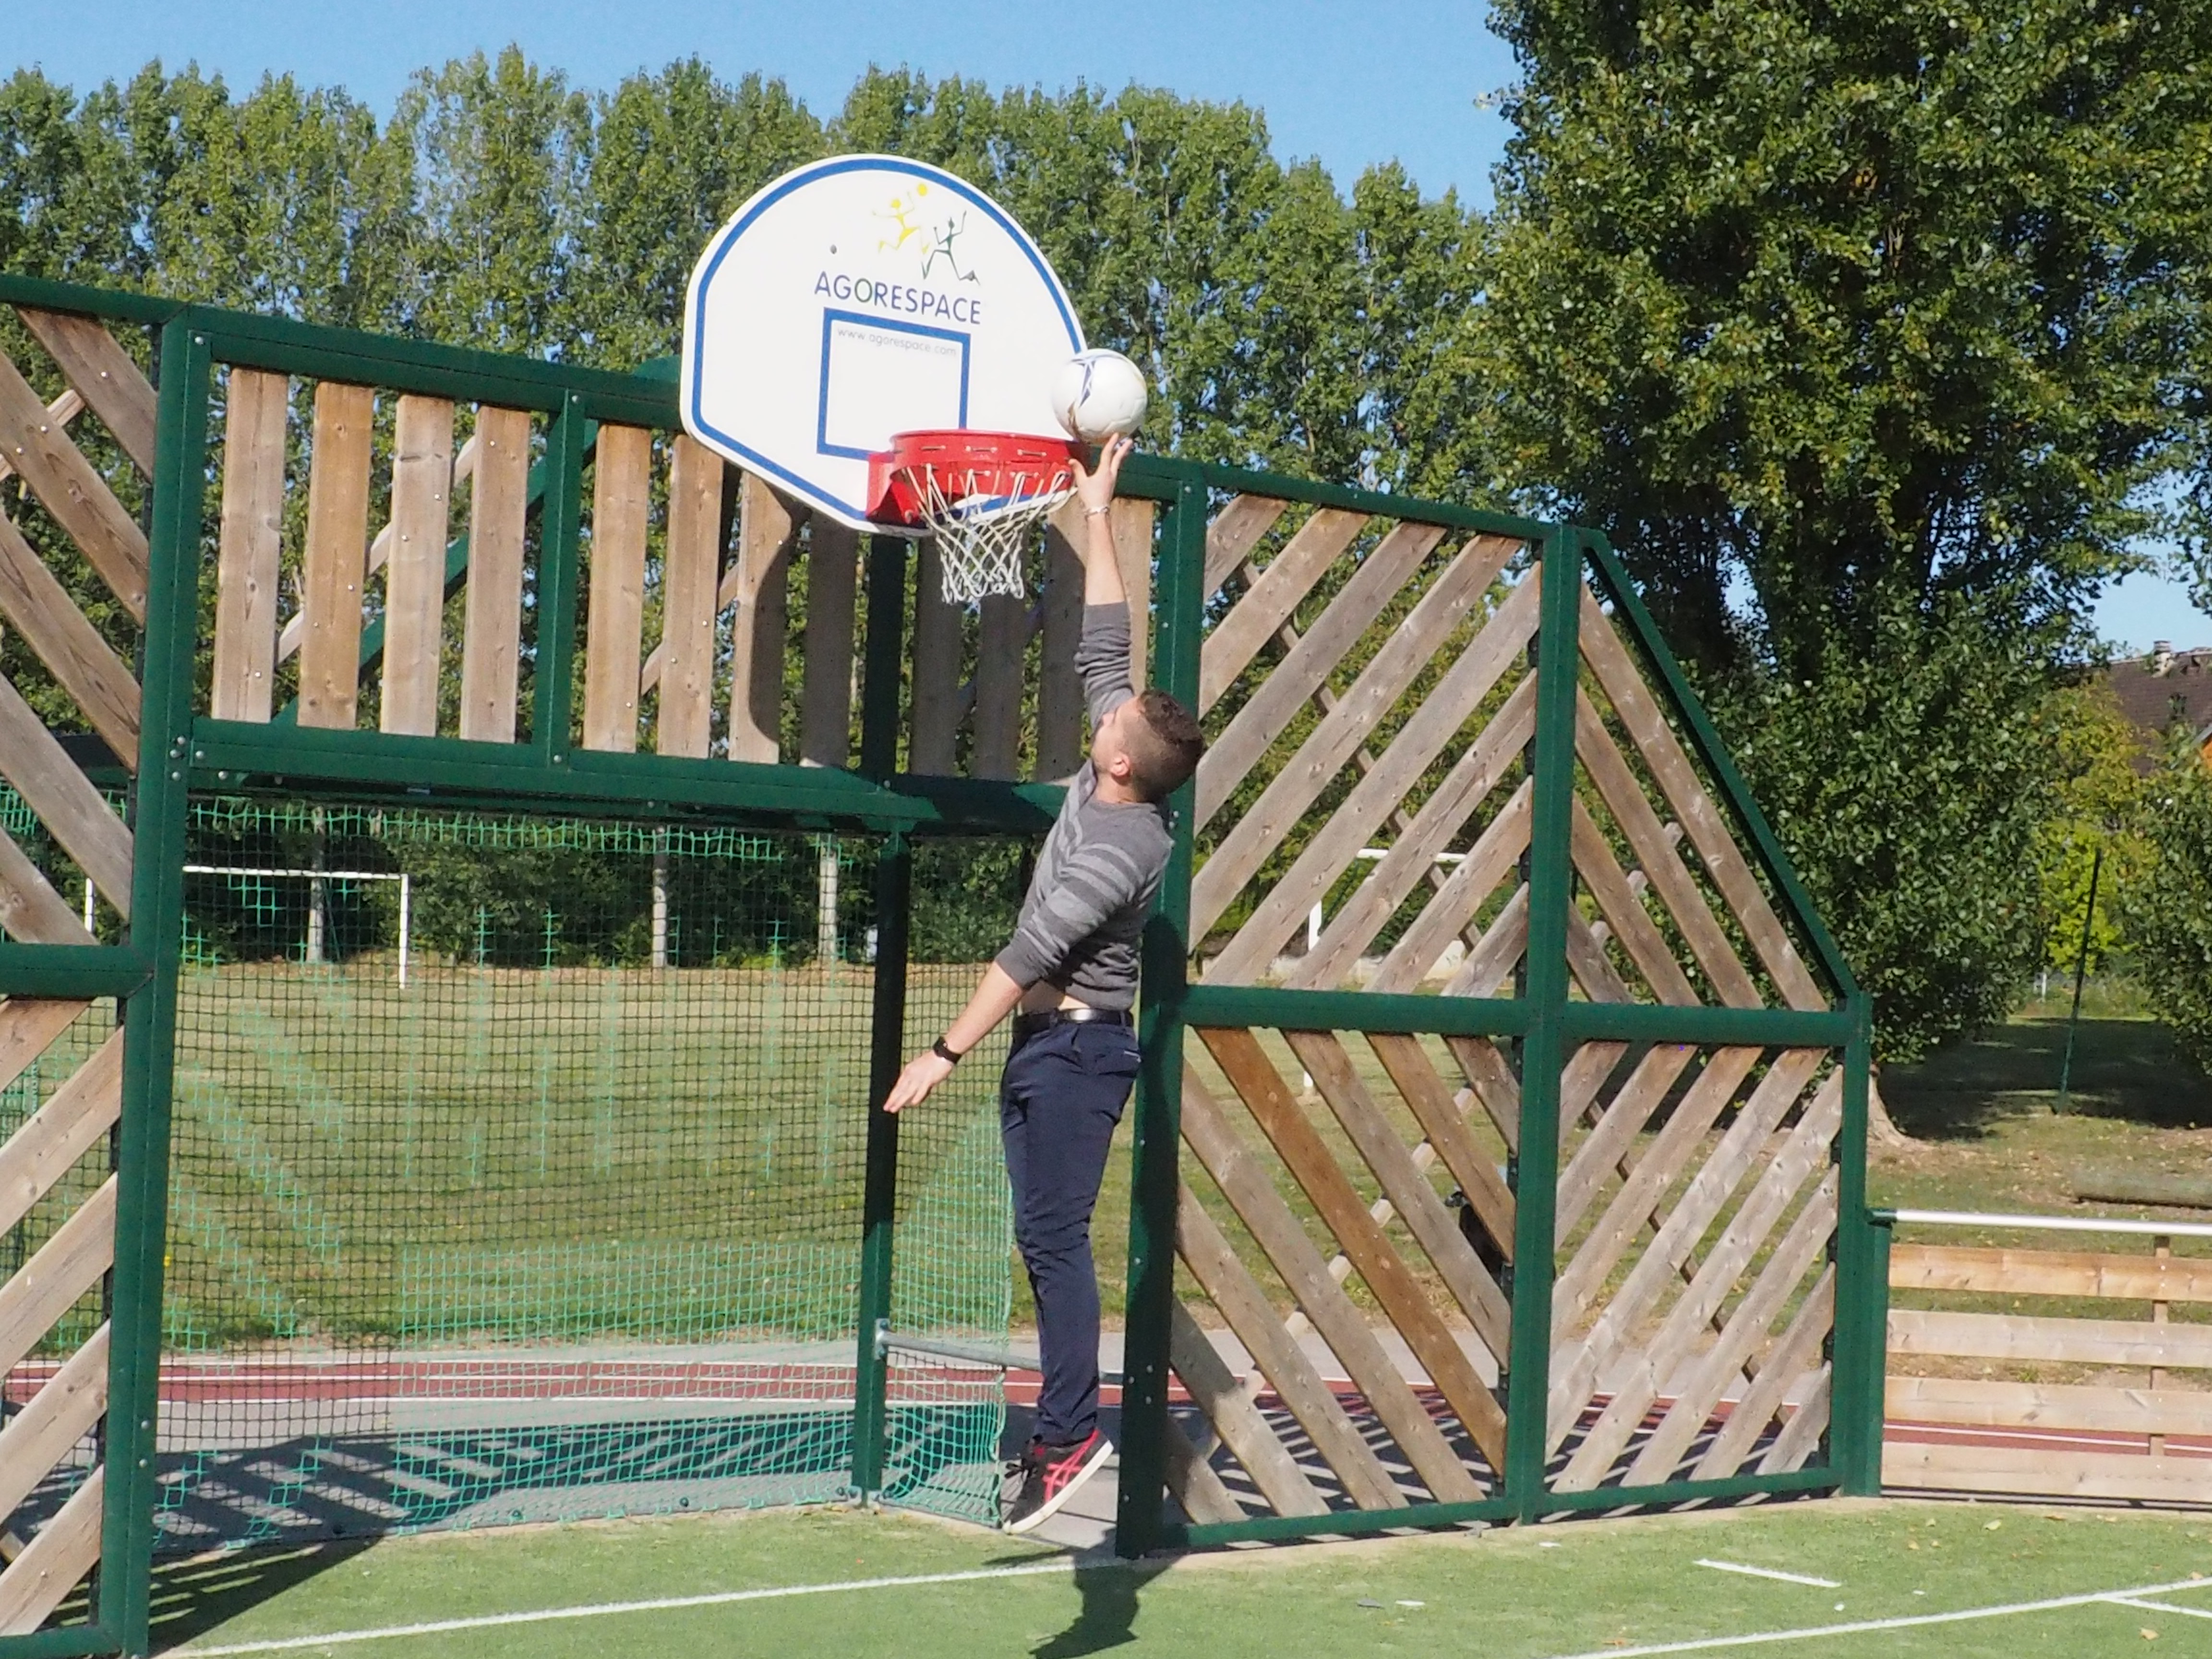 Mini panier de basket Equipe de France de Basket